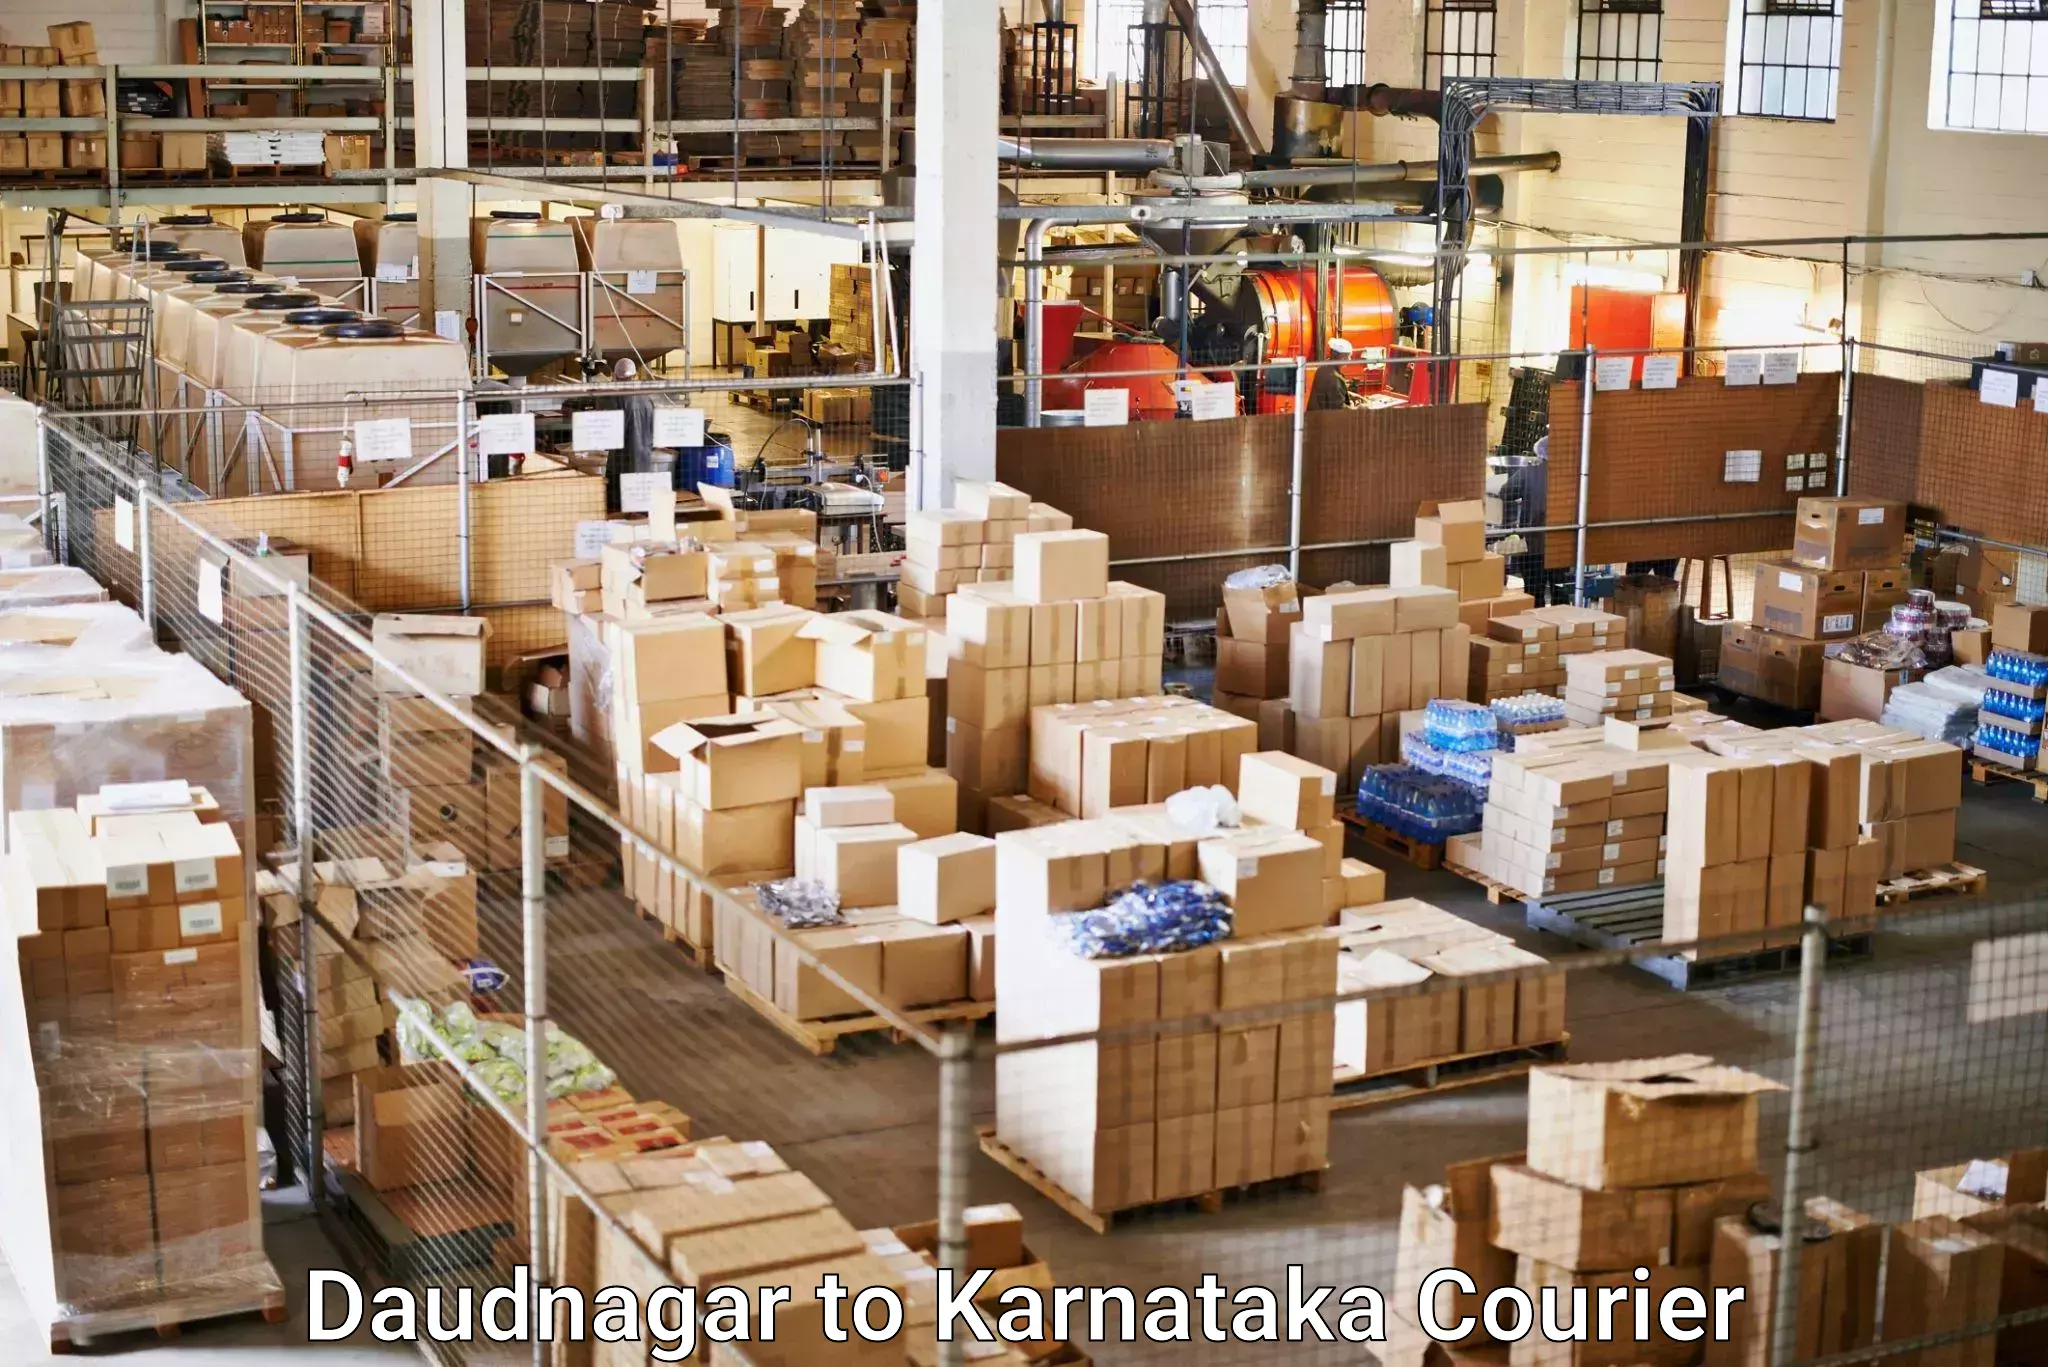 Residential courier service Daudnagar to Karnataka